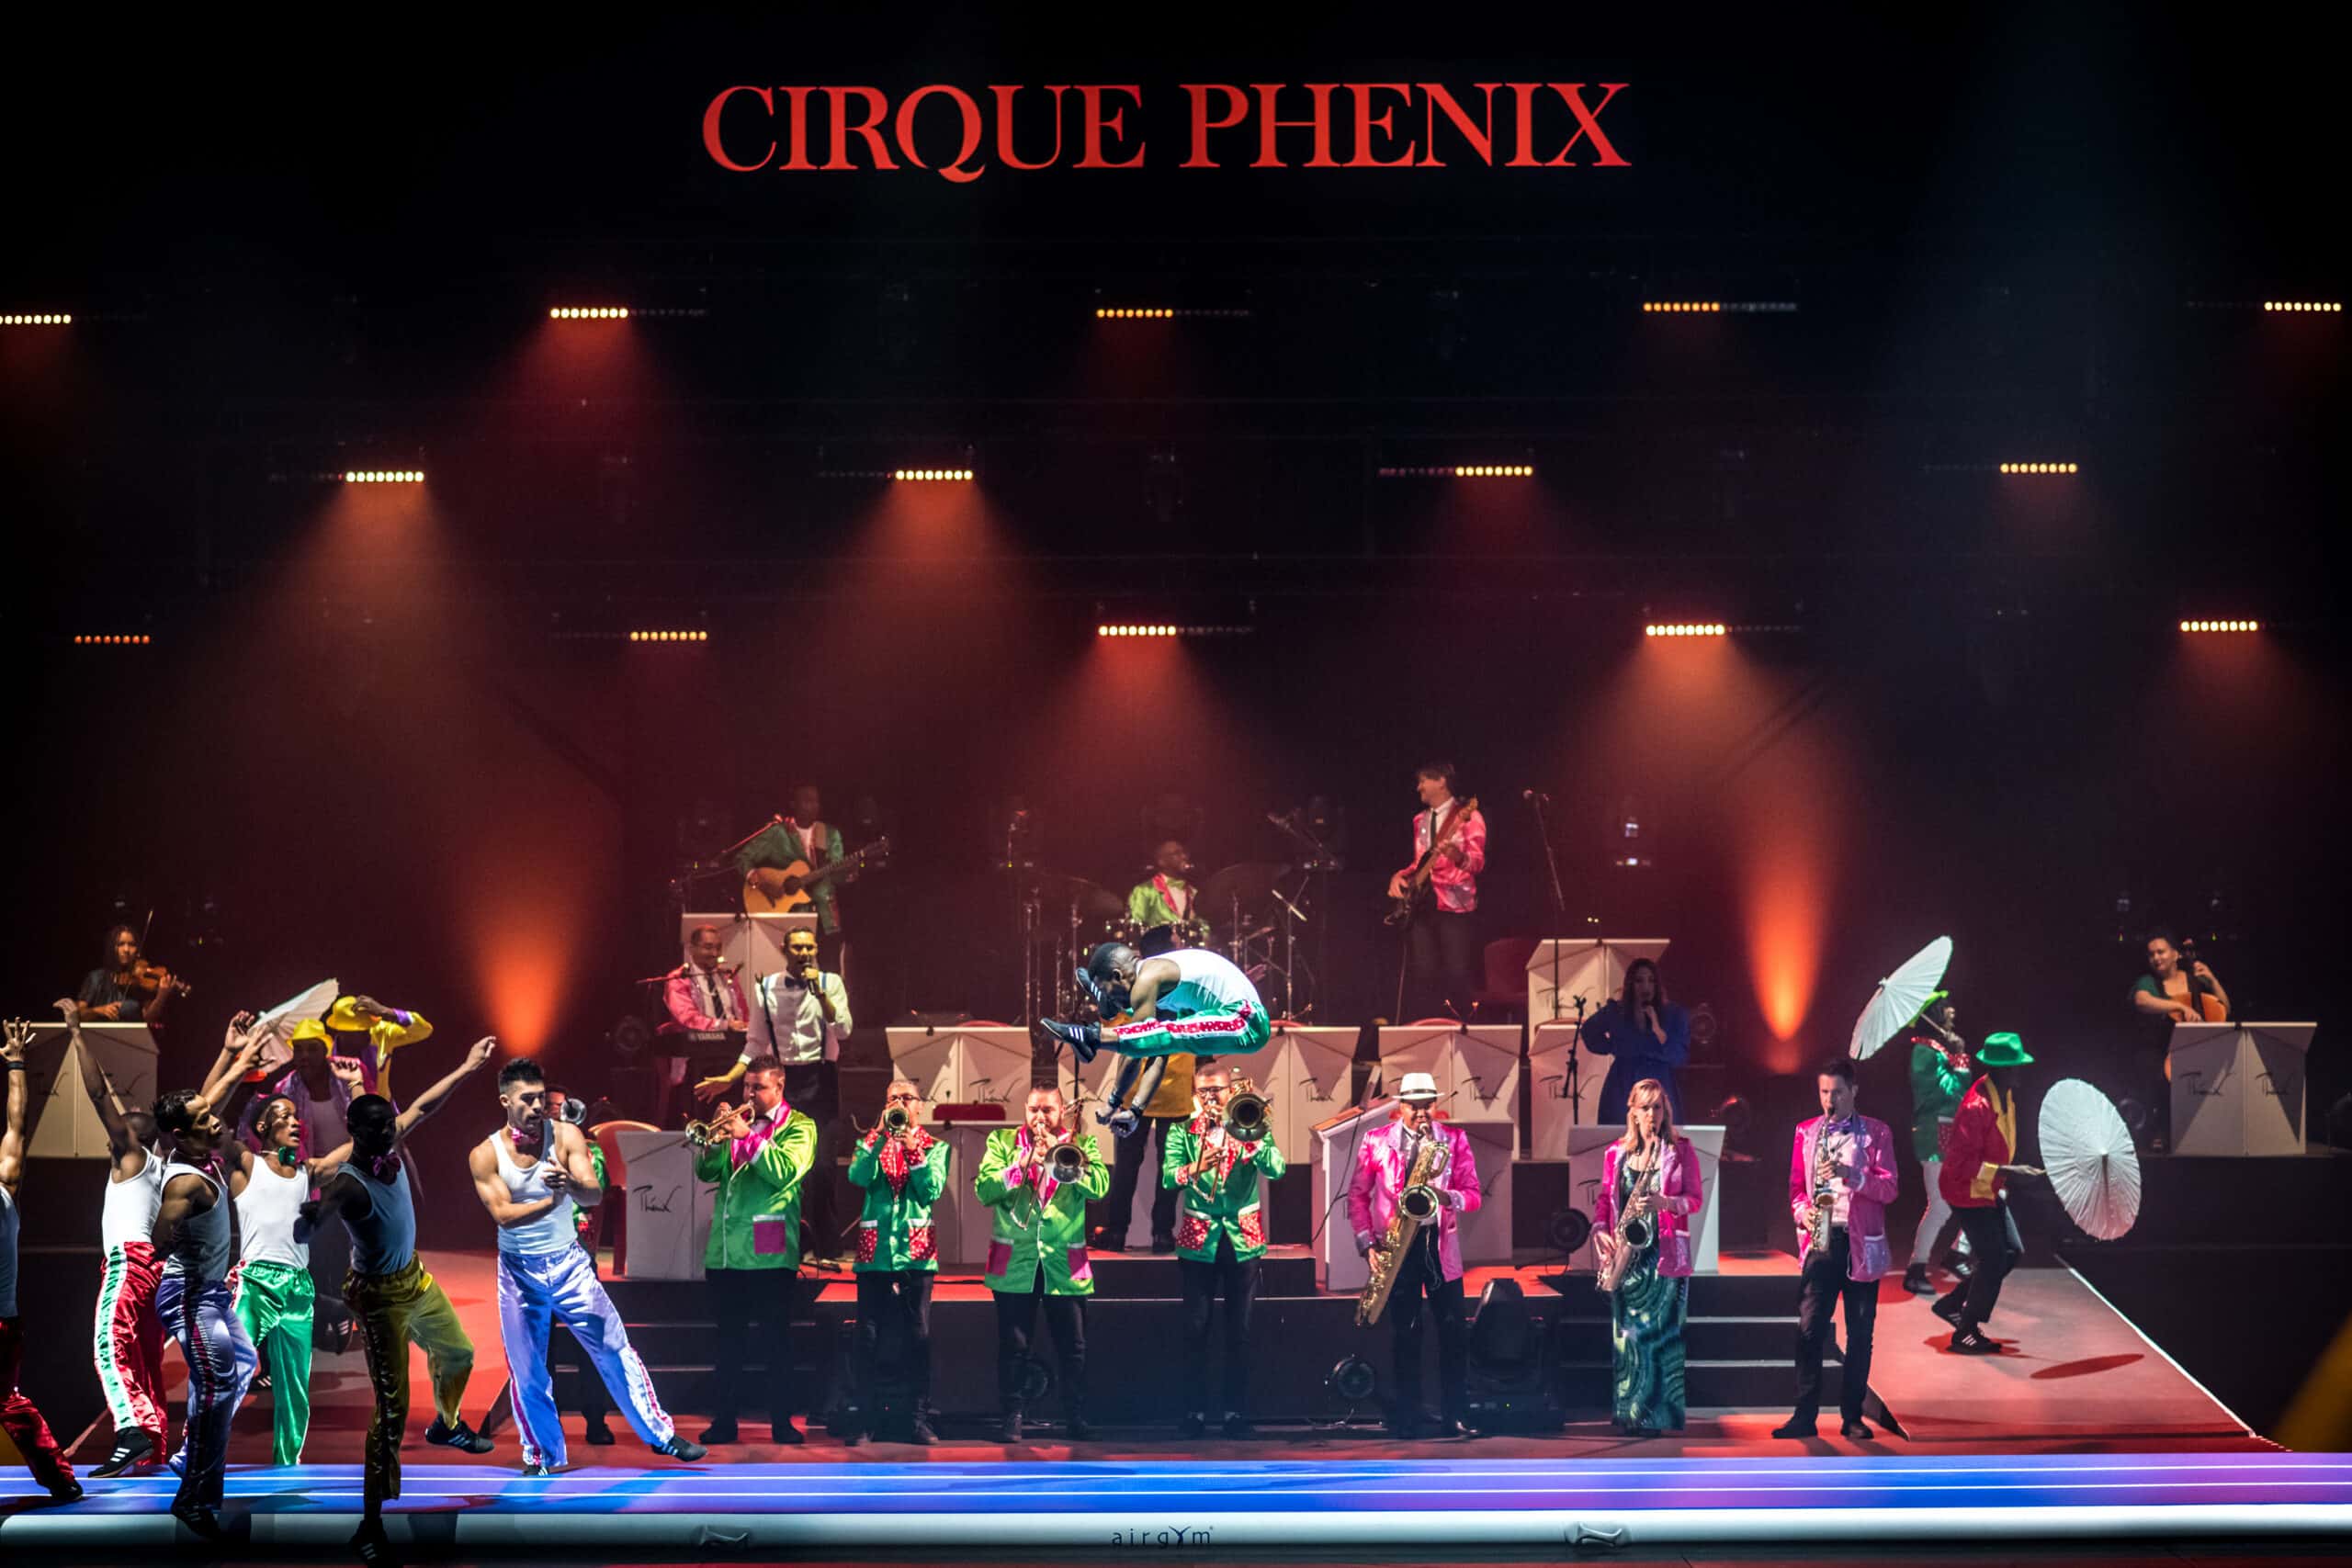 Fast Track et Kaapse Klopse du spectacle Rhapsodie au Cirque Phénix